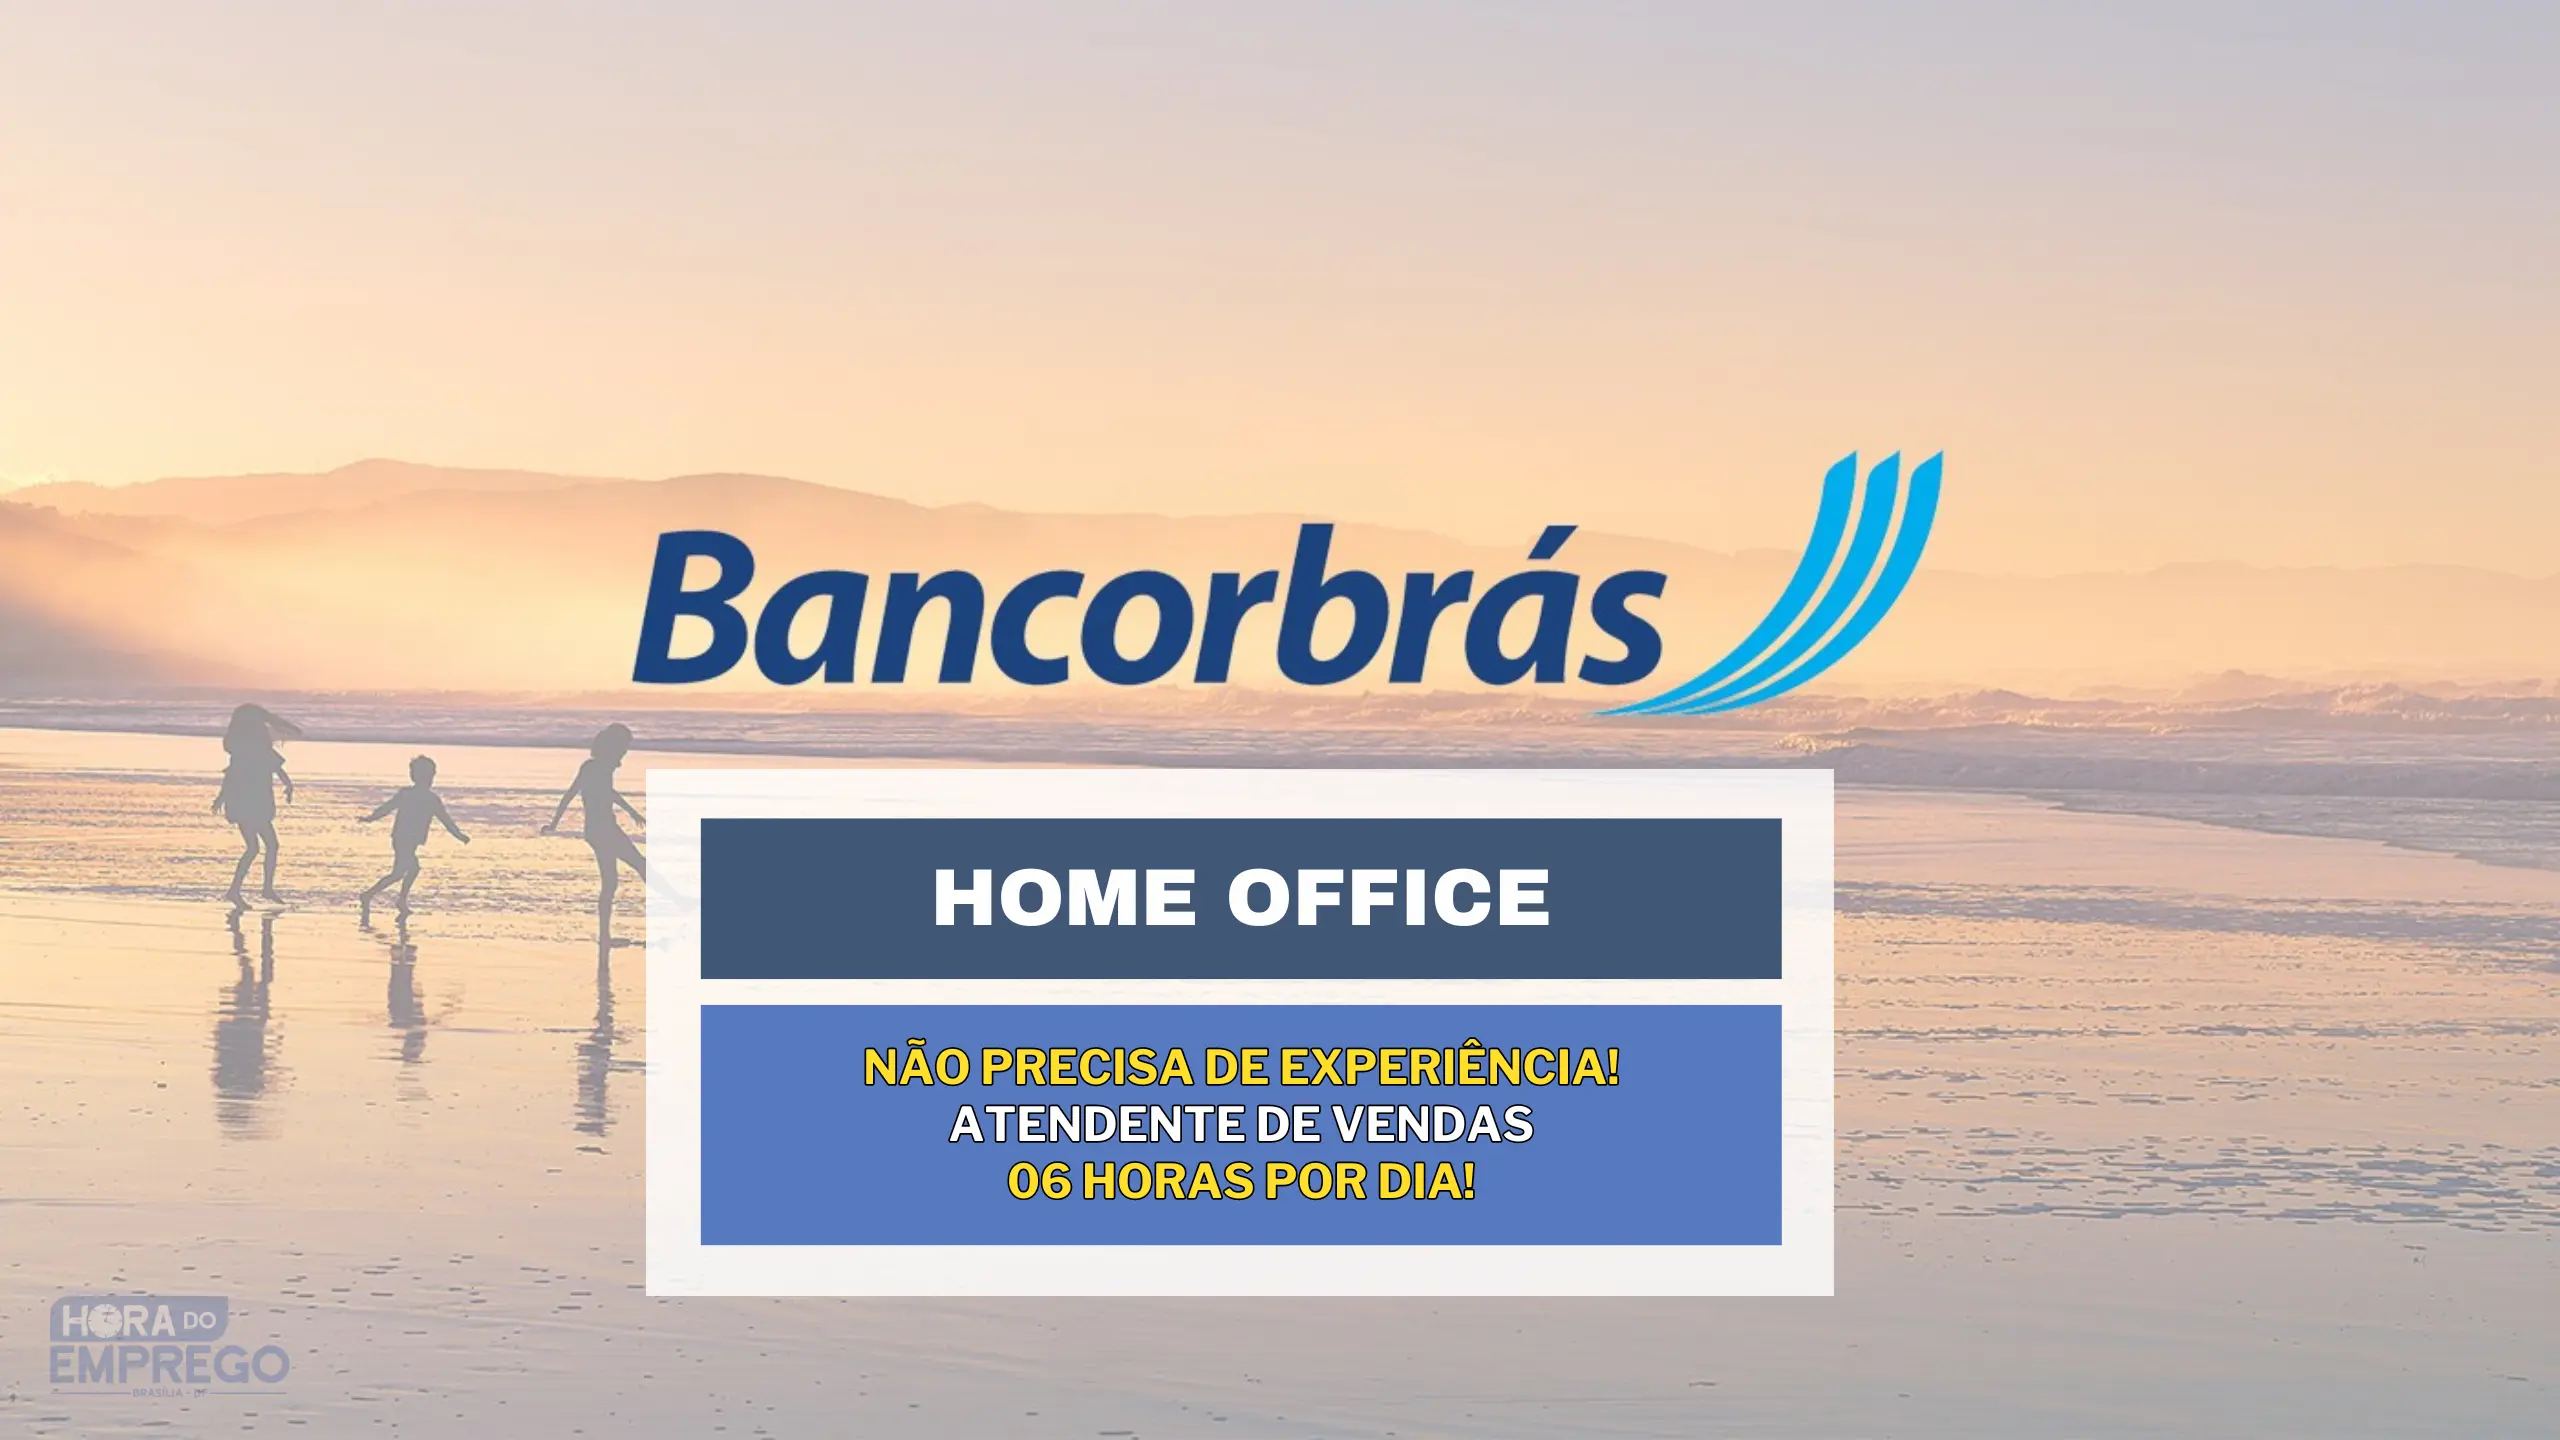 Não precisa de experiência! Bancorbrás abre vaga HOME OFFICE 06 horas por dia “as 12h às 18h” para Atendente de Vendas